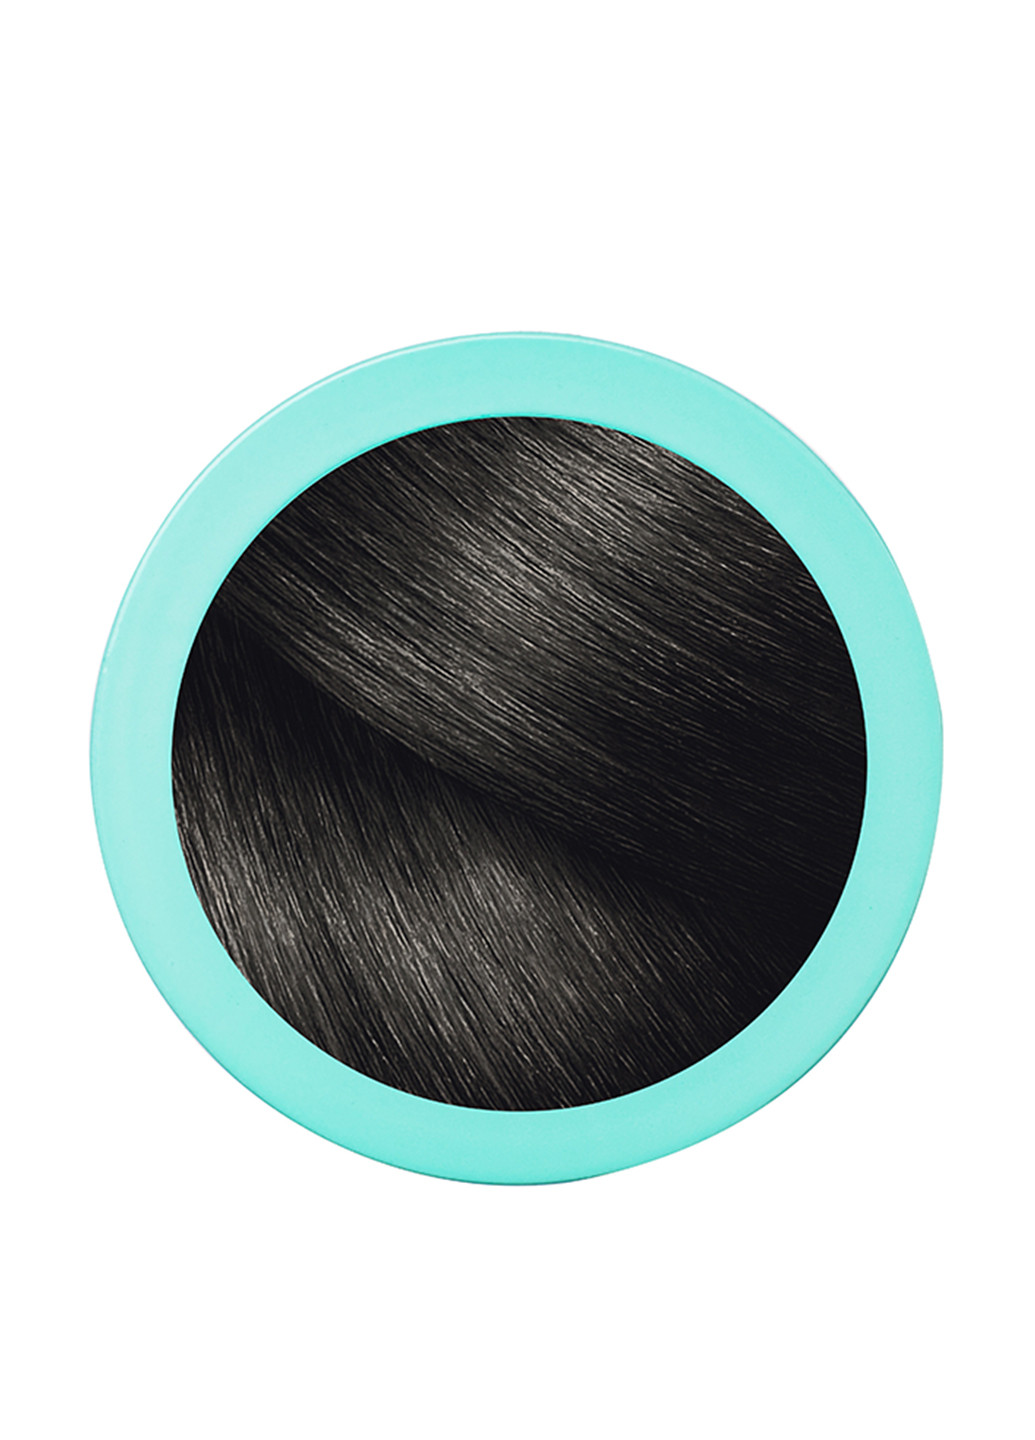 Спрей для волос Magic Retouch №1 (черный), 75 мл L'Oreal Paris (96593793)